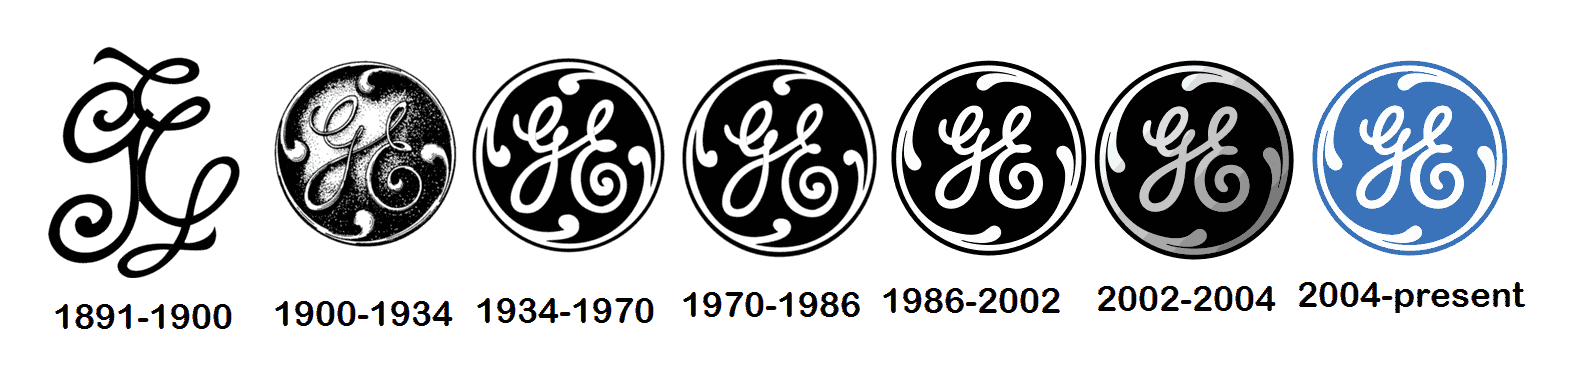 GE-Logo-Evolution